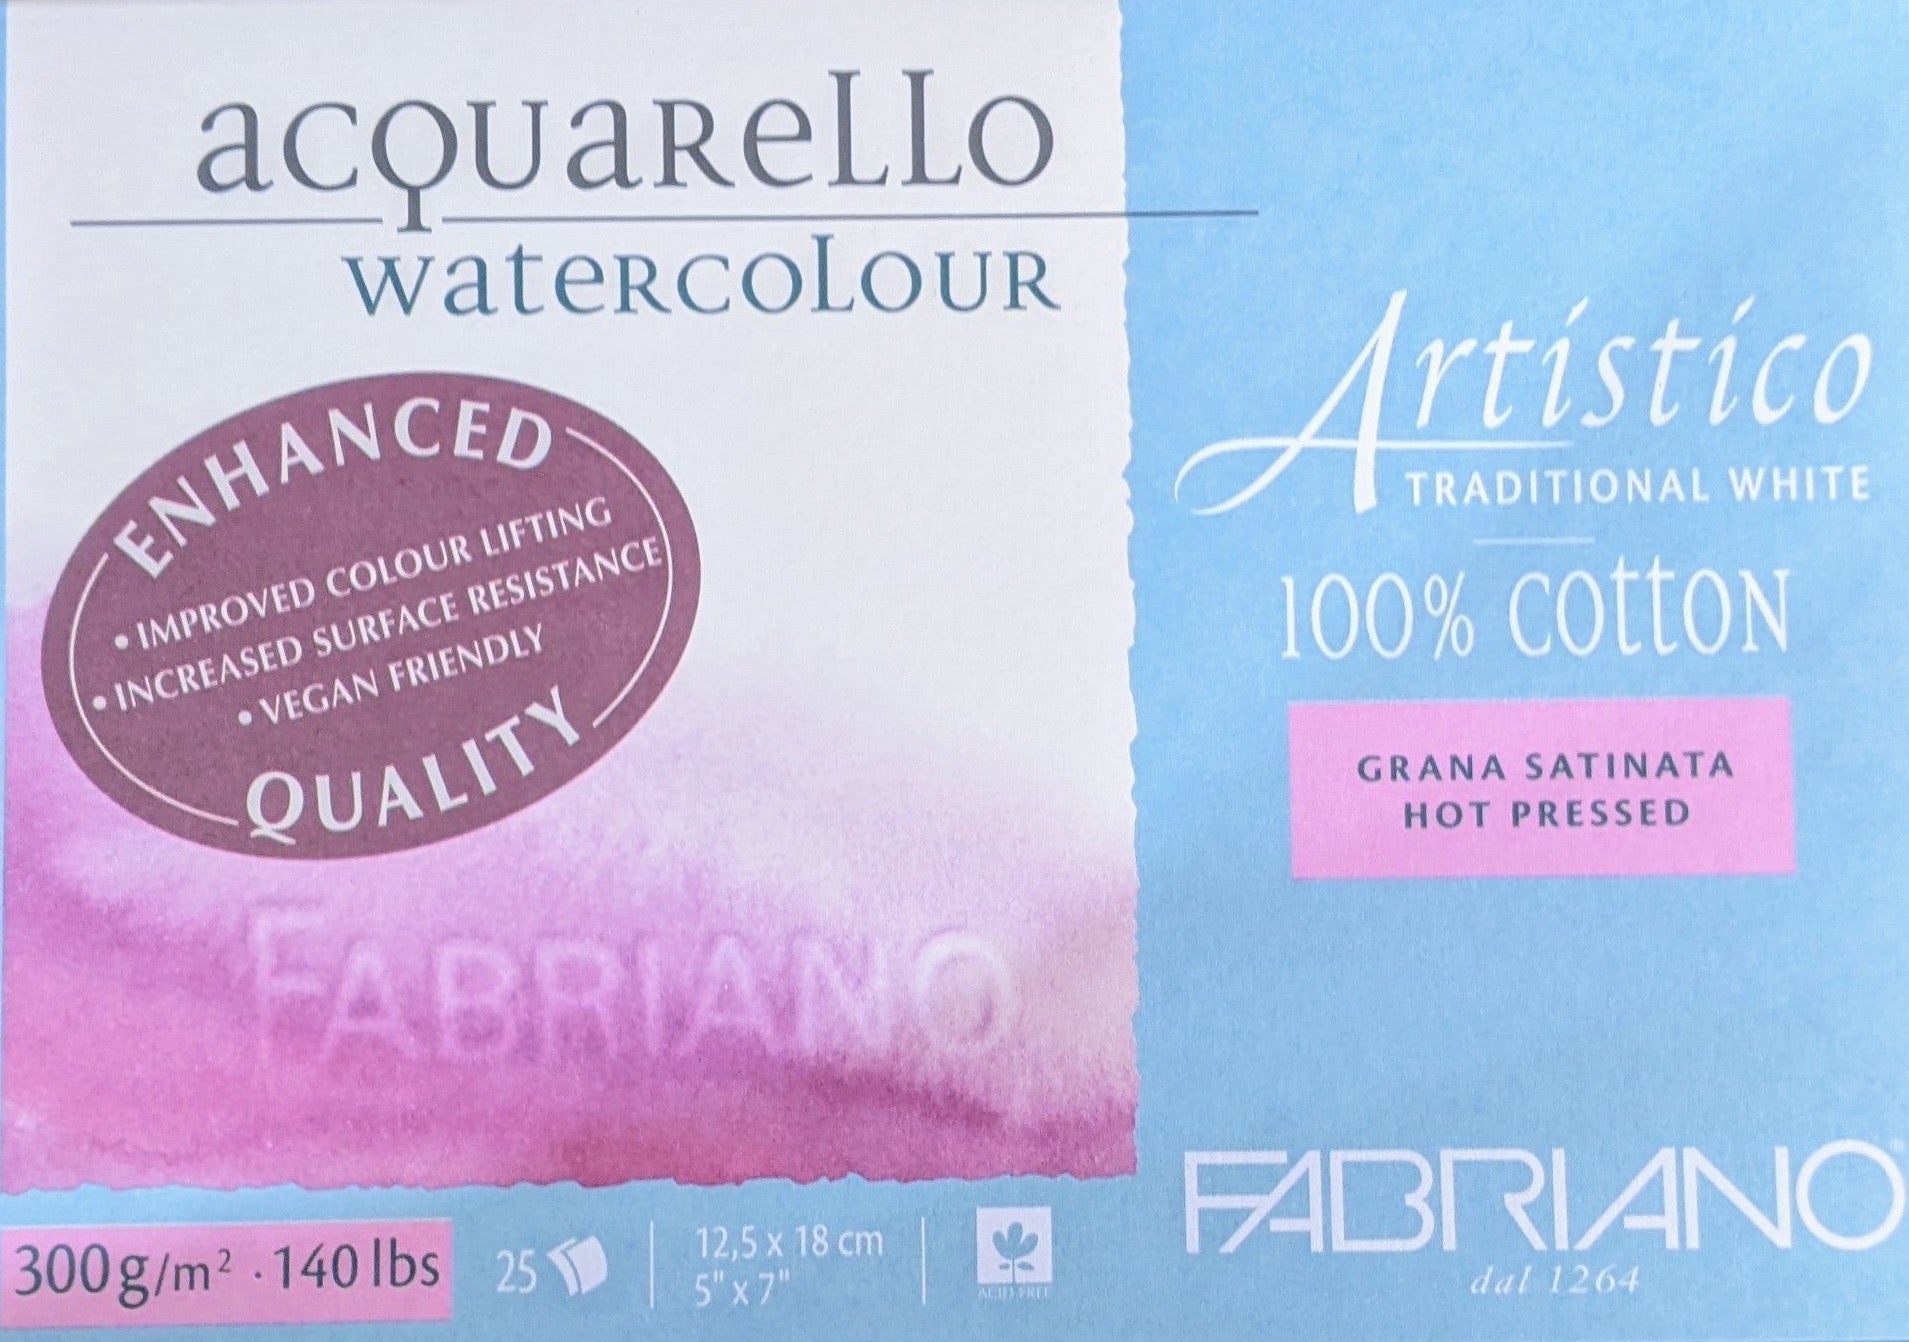 Fabriano Artistico 100 % Cotton 300 gsm Hot Press Satina Watercolour paper 5 x 7 "